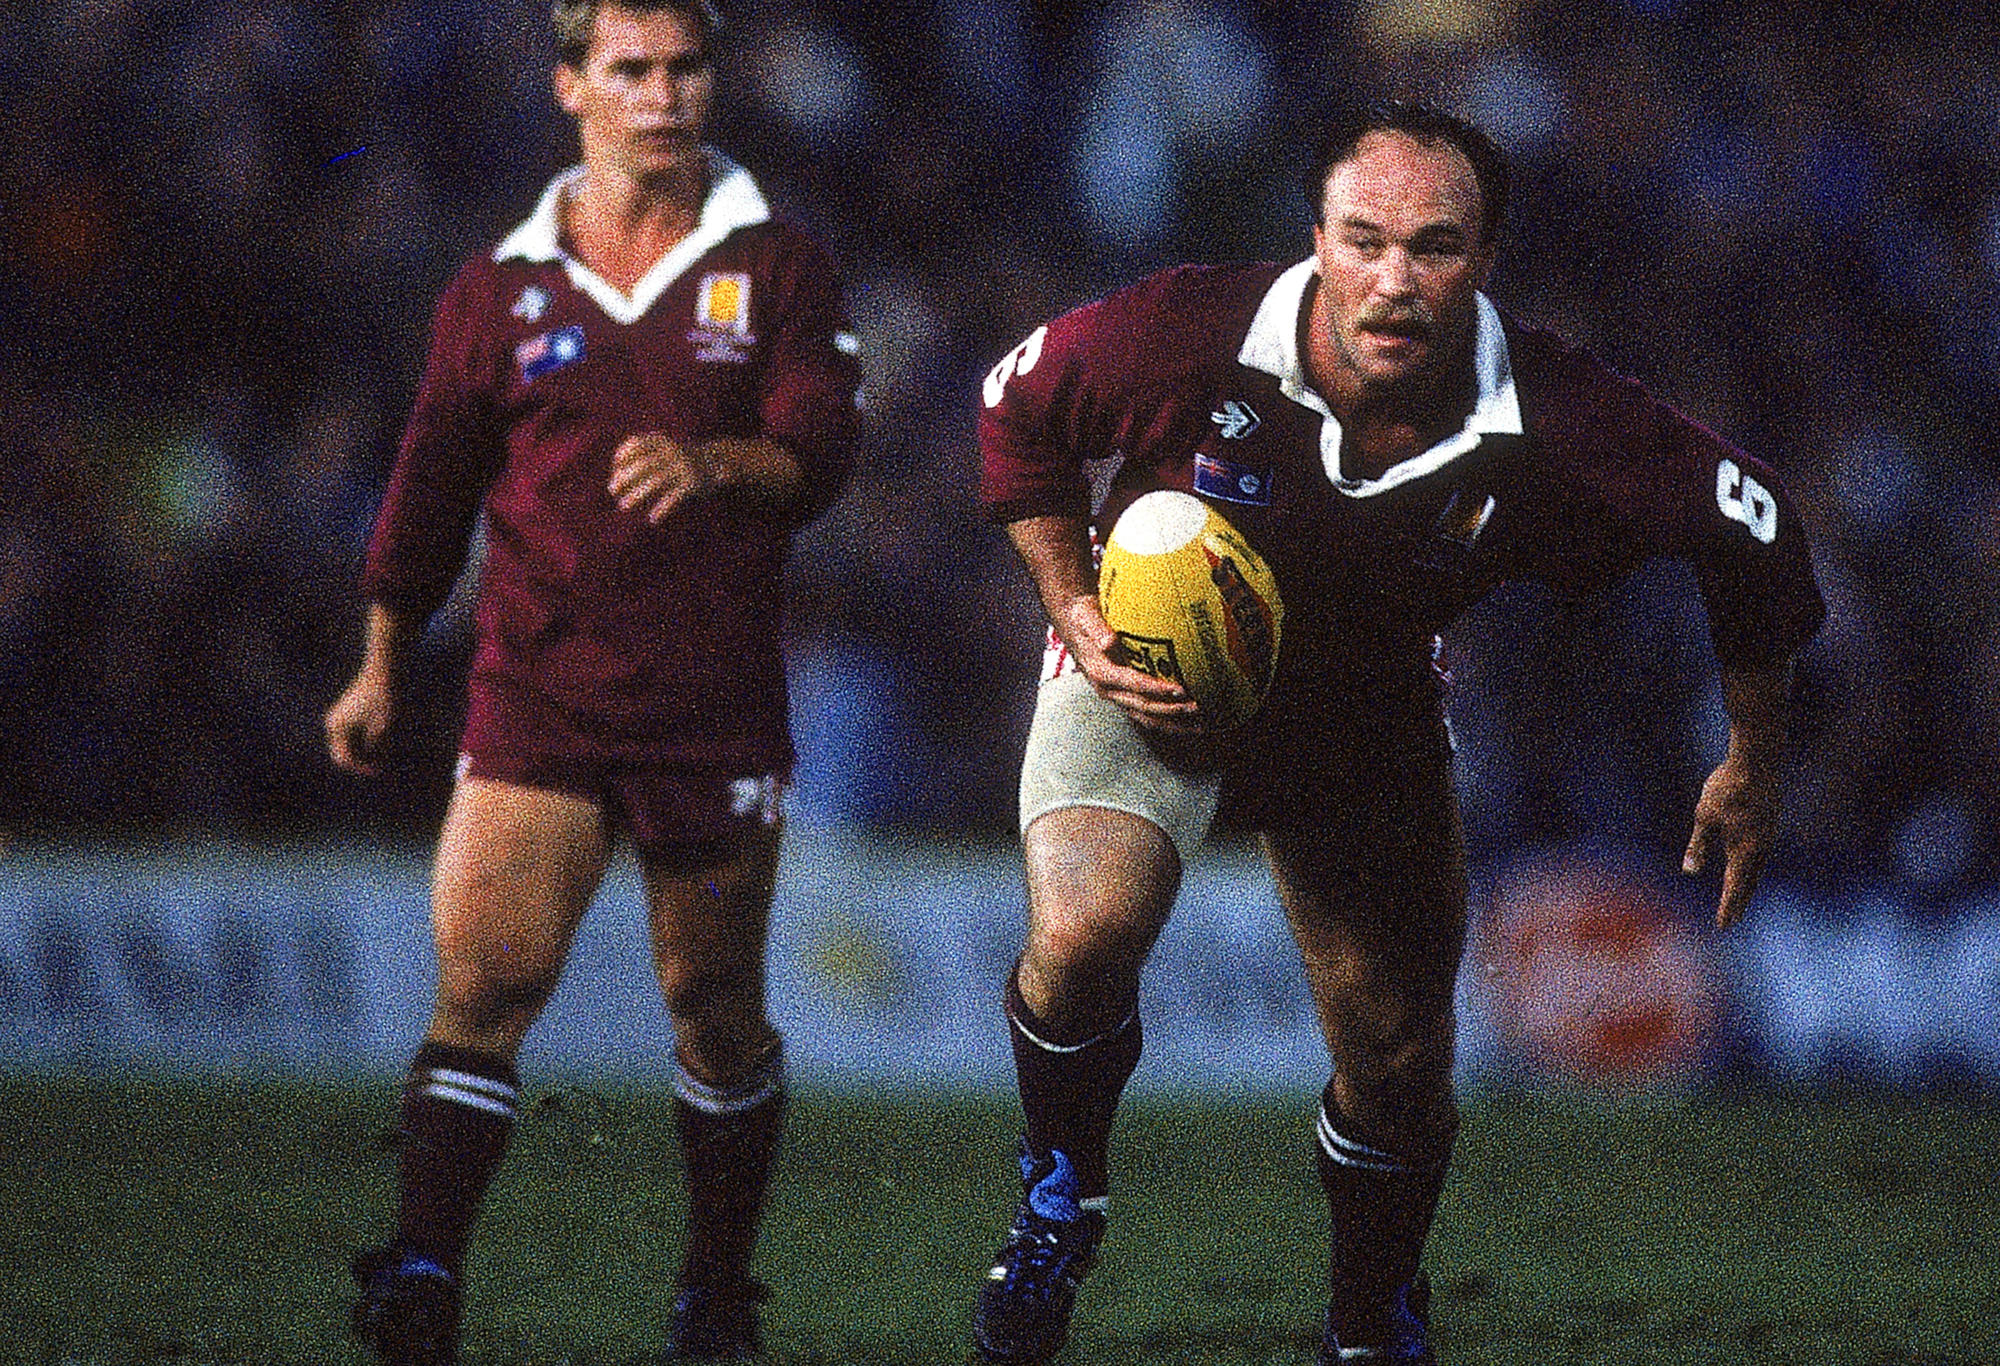 Wally Lewis membawa bola ke Queensland.